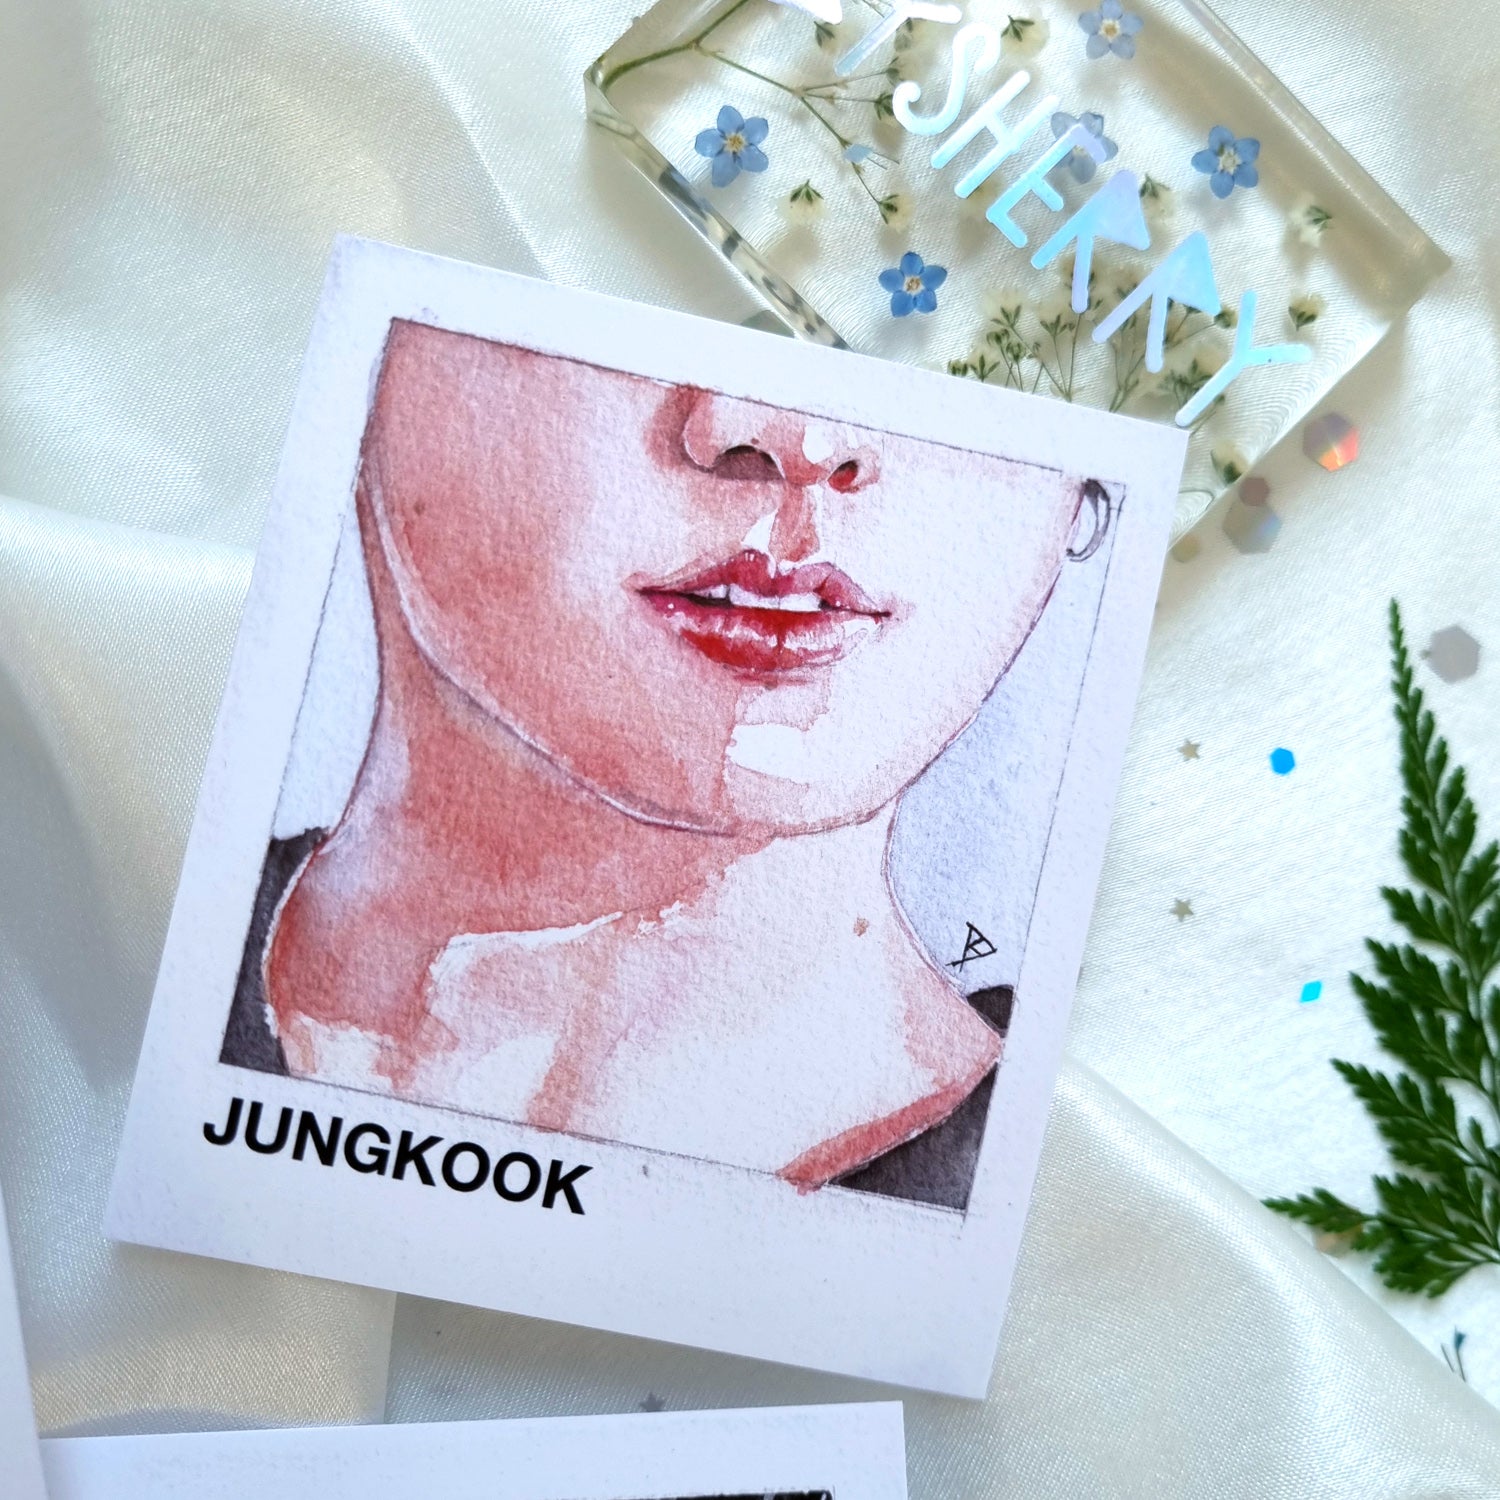 BTS Jungkook Details Set of 3 Photocard-style Prints